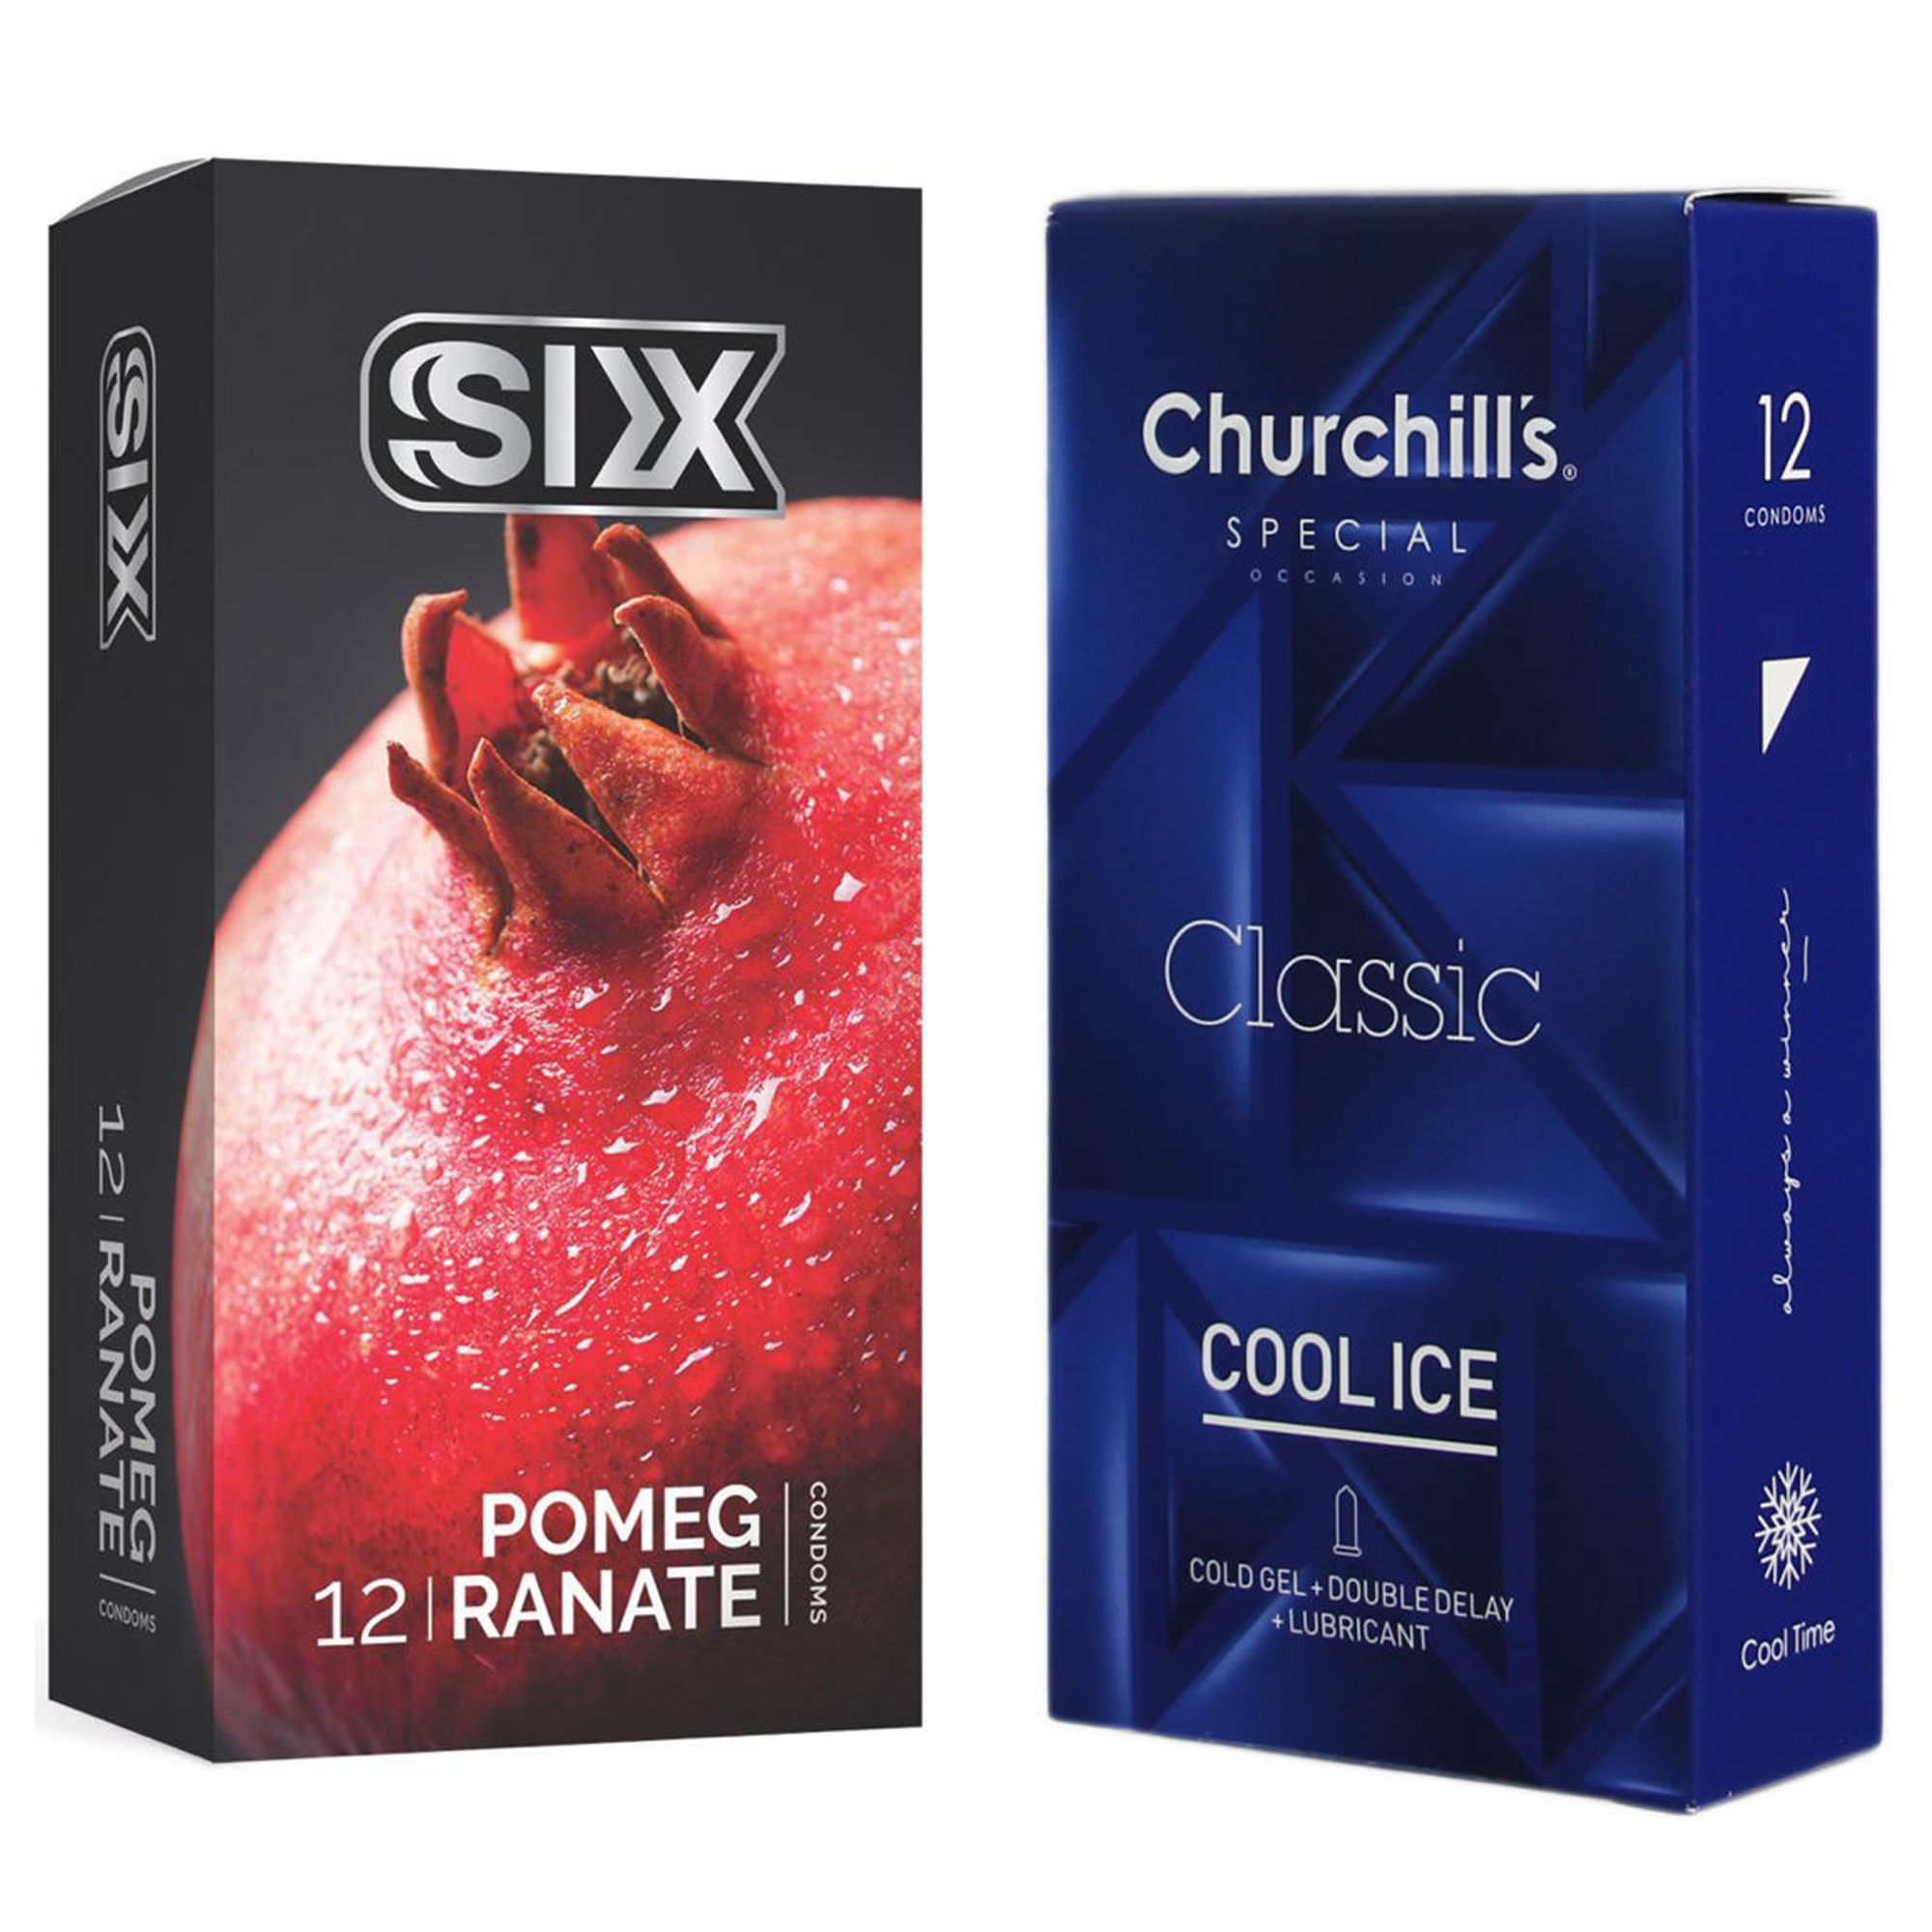 کاندوم چرچیلز مدل Cool Ice بسته 12 عددی به همراه کاندوم سیکس مدل انار بسته 12 عددی